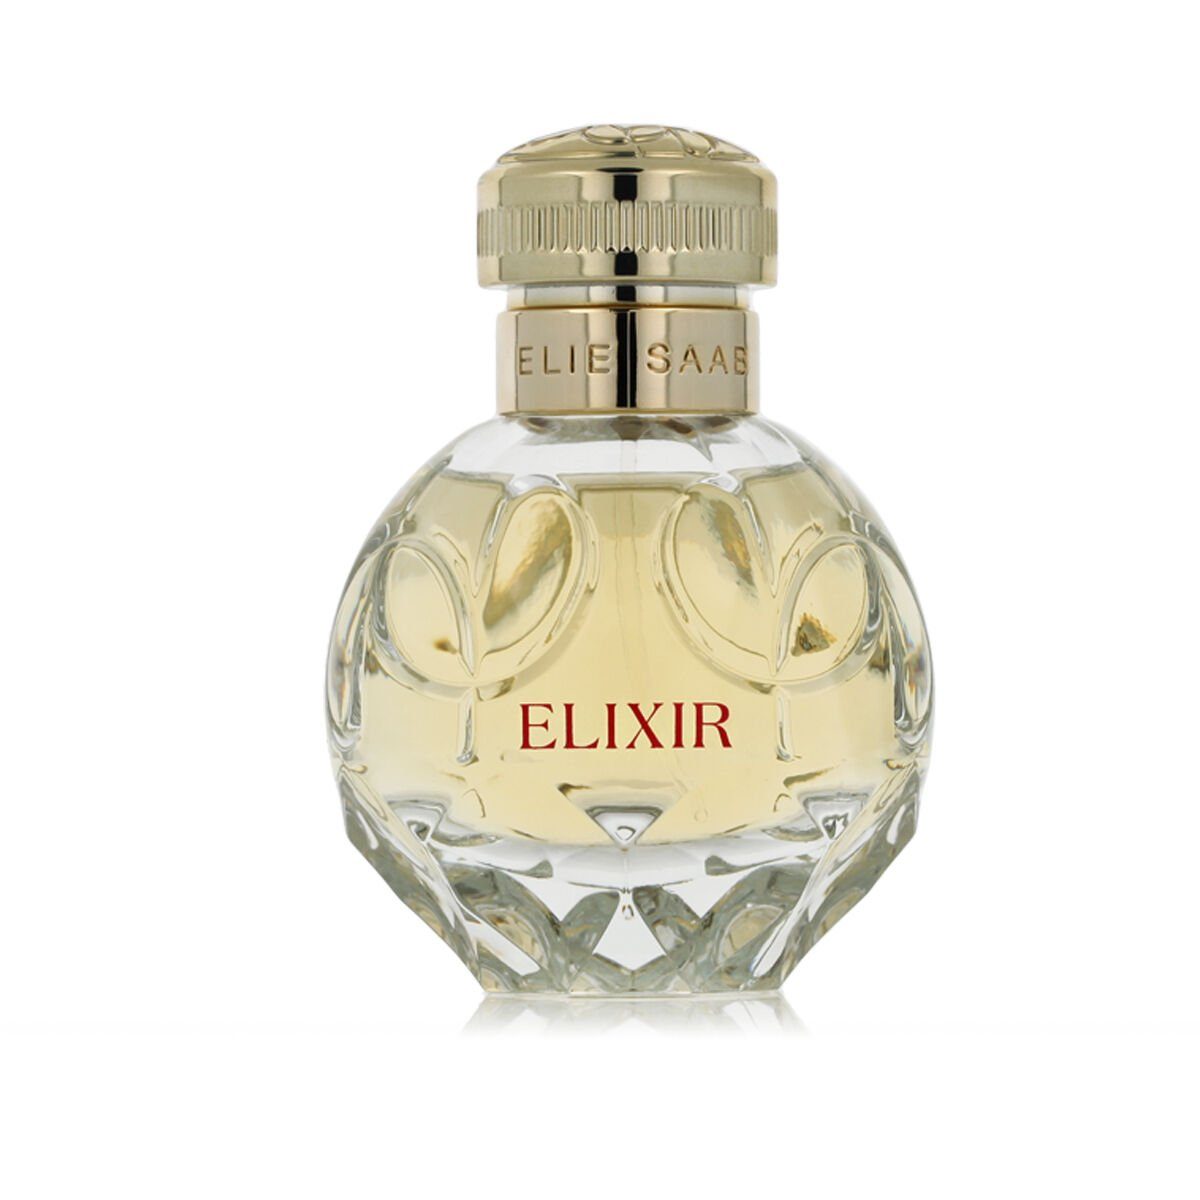 de Toilette Eau Damenparfüm Elixir ml Eau SAAB Elie Parfum de 50 Saab ELIE